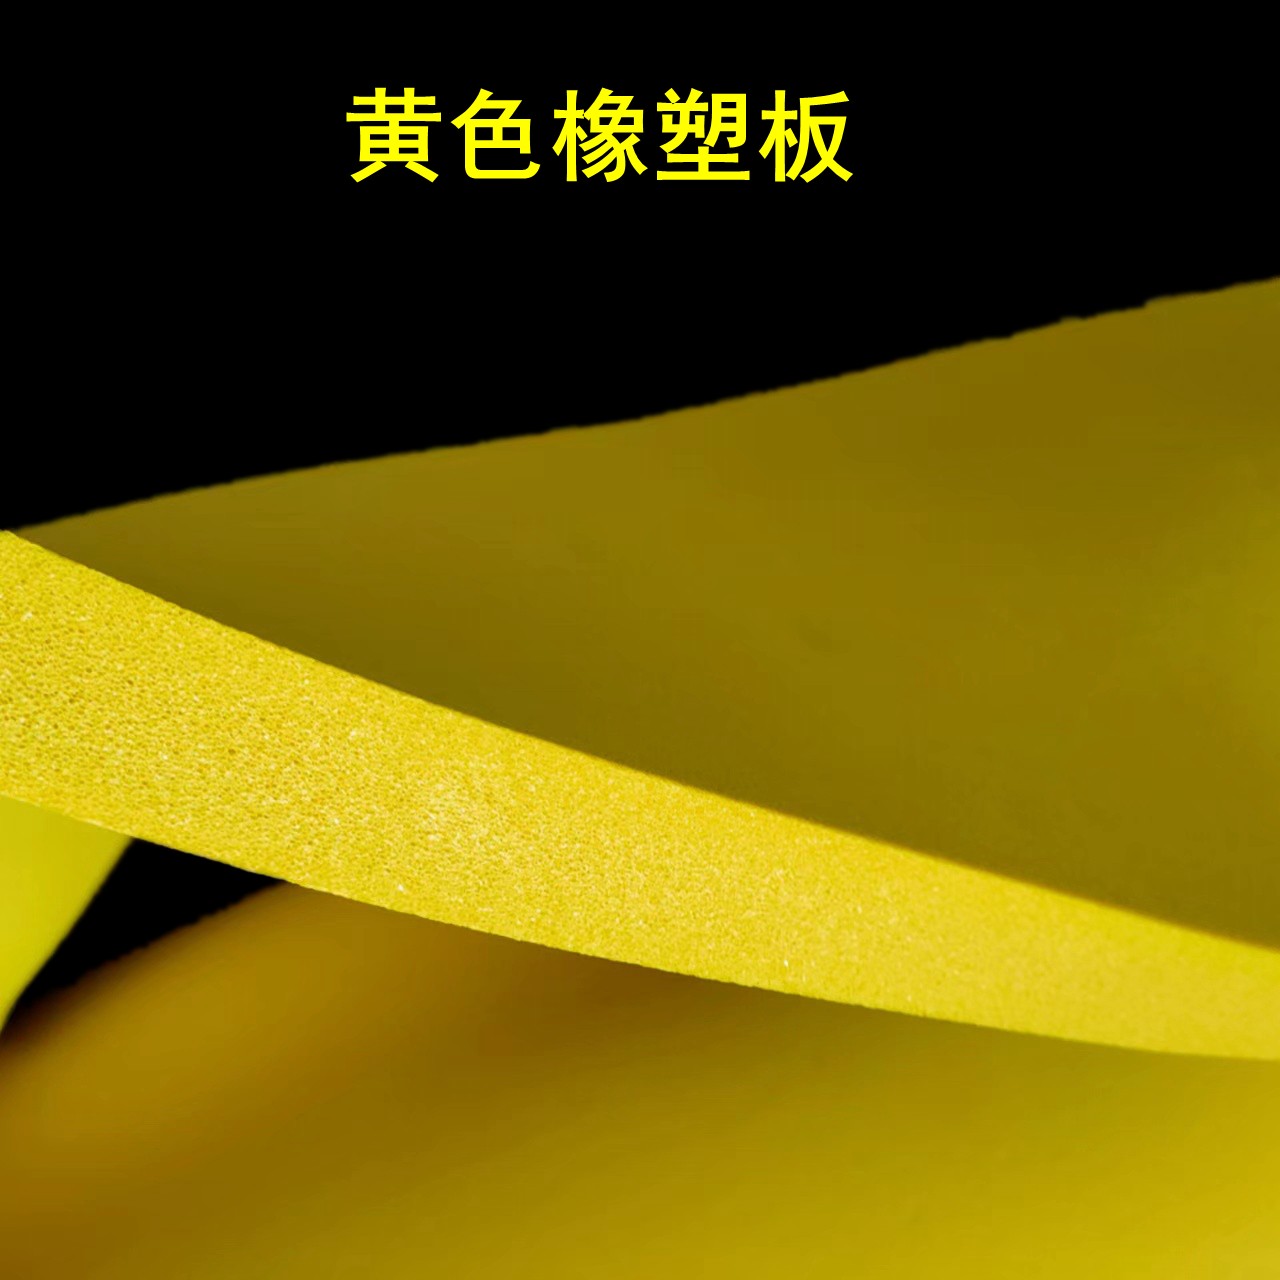 黄色橡塑板